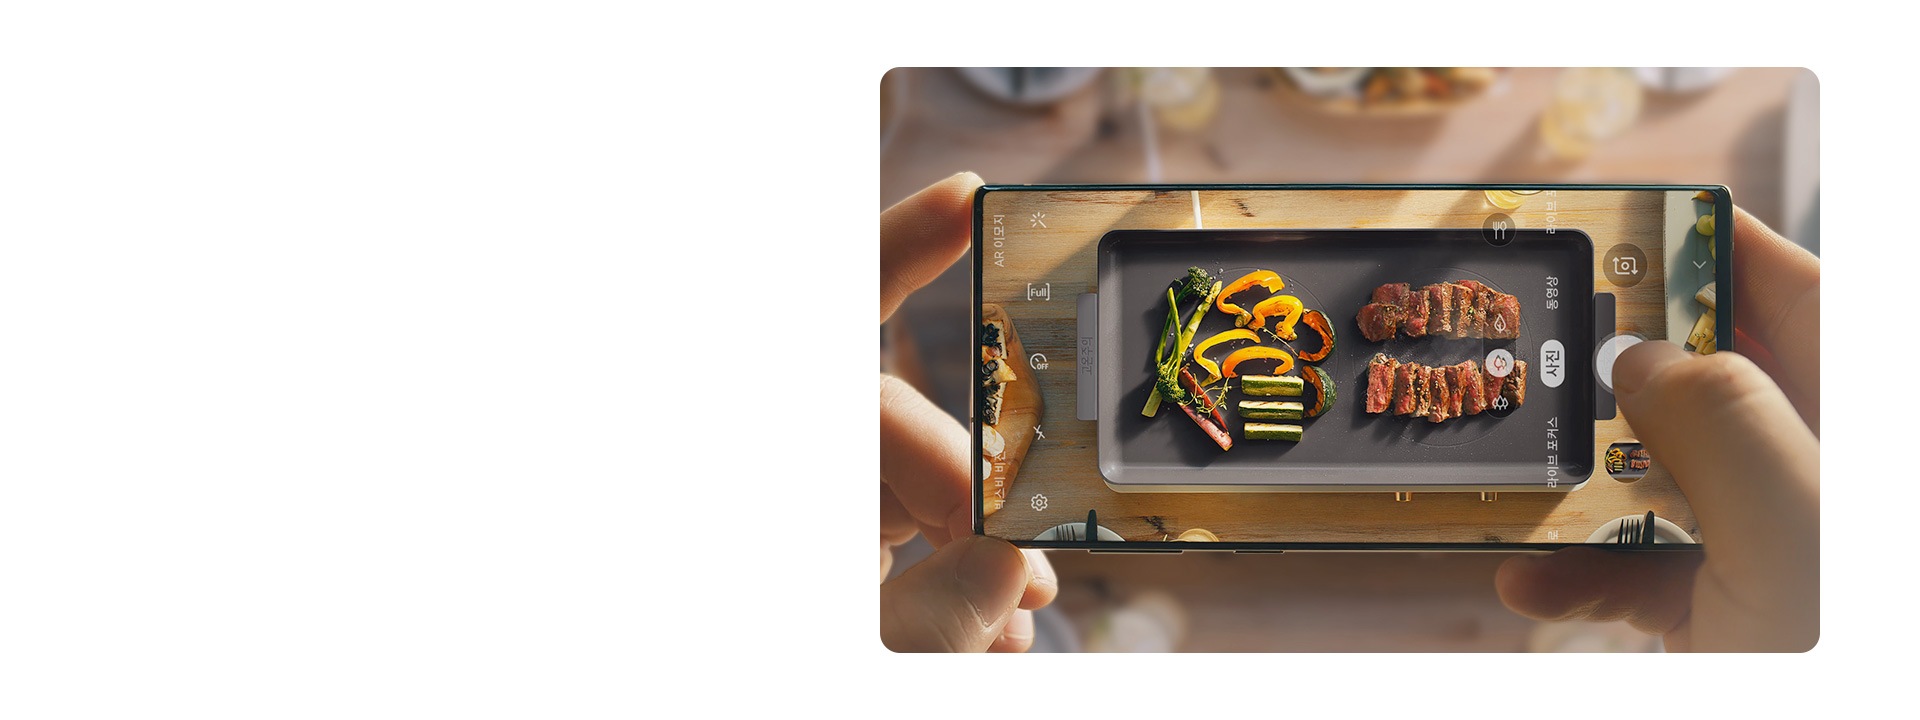 삼성 갤럭시 폰으로 더 플레이트 인덕션 위에 조리되고 있는 고기와 야채를 촬영하고 있습니다.